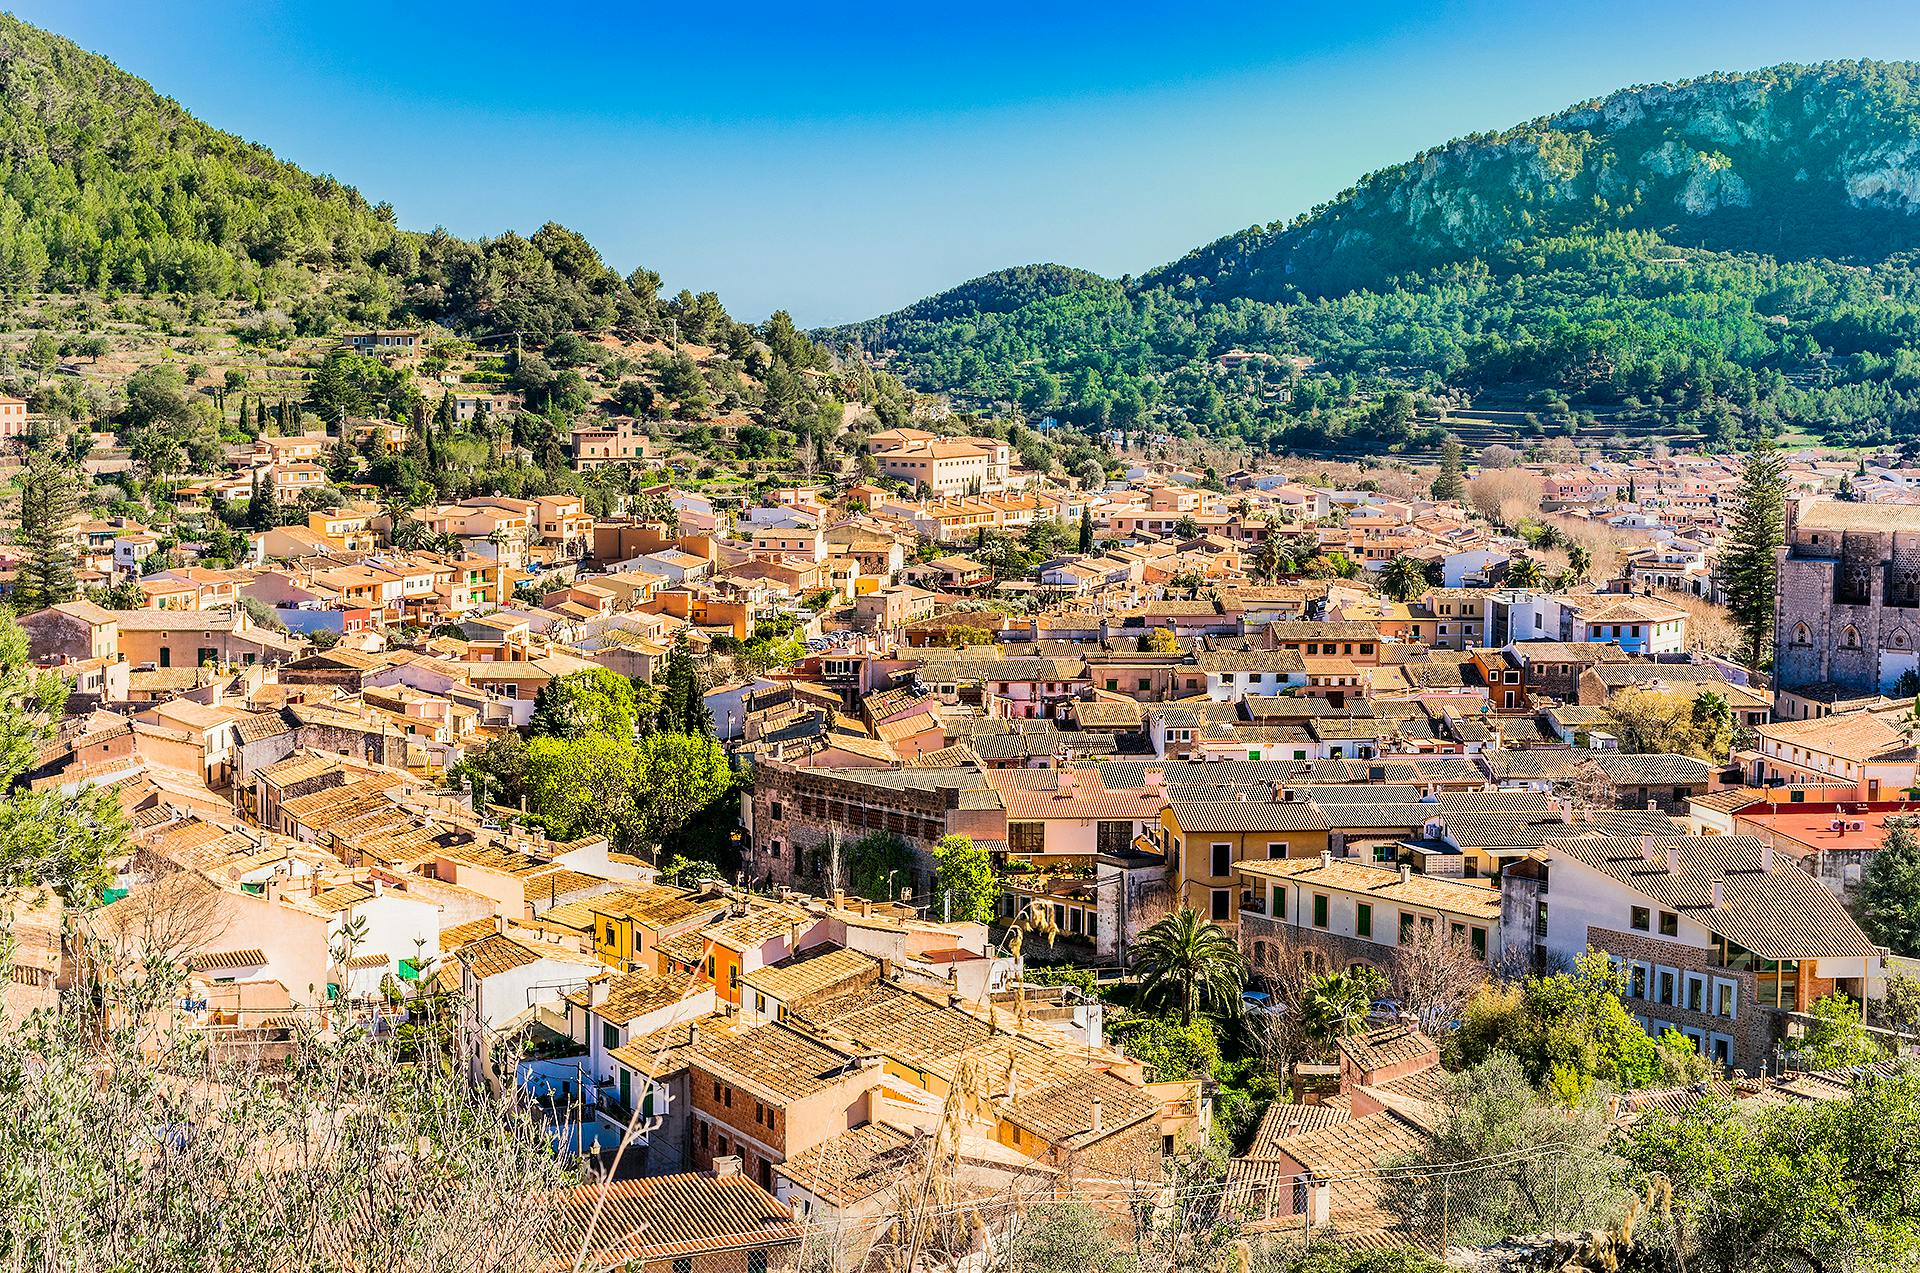 Picture-postcard village of Esporles